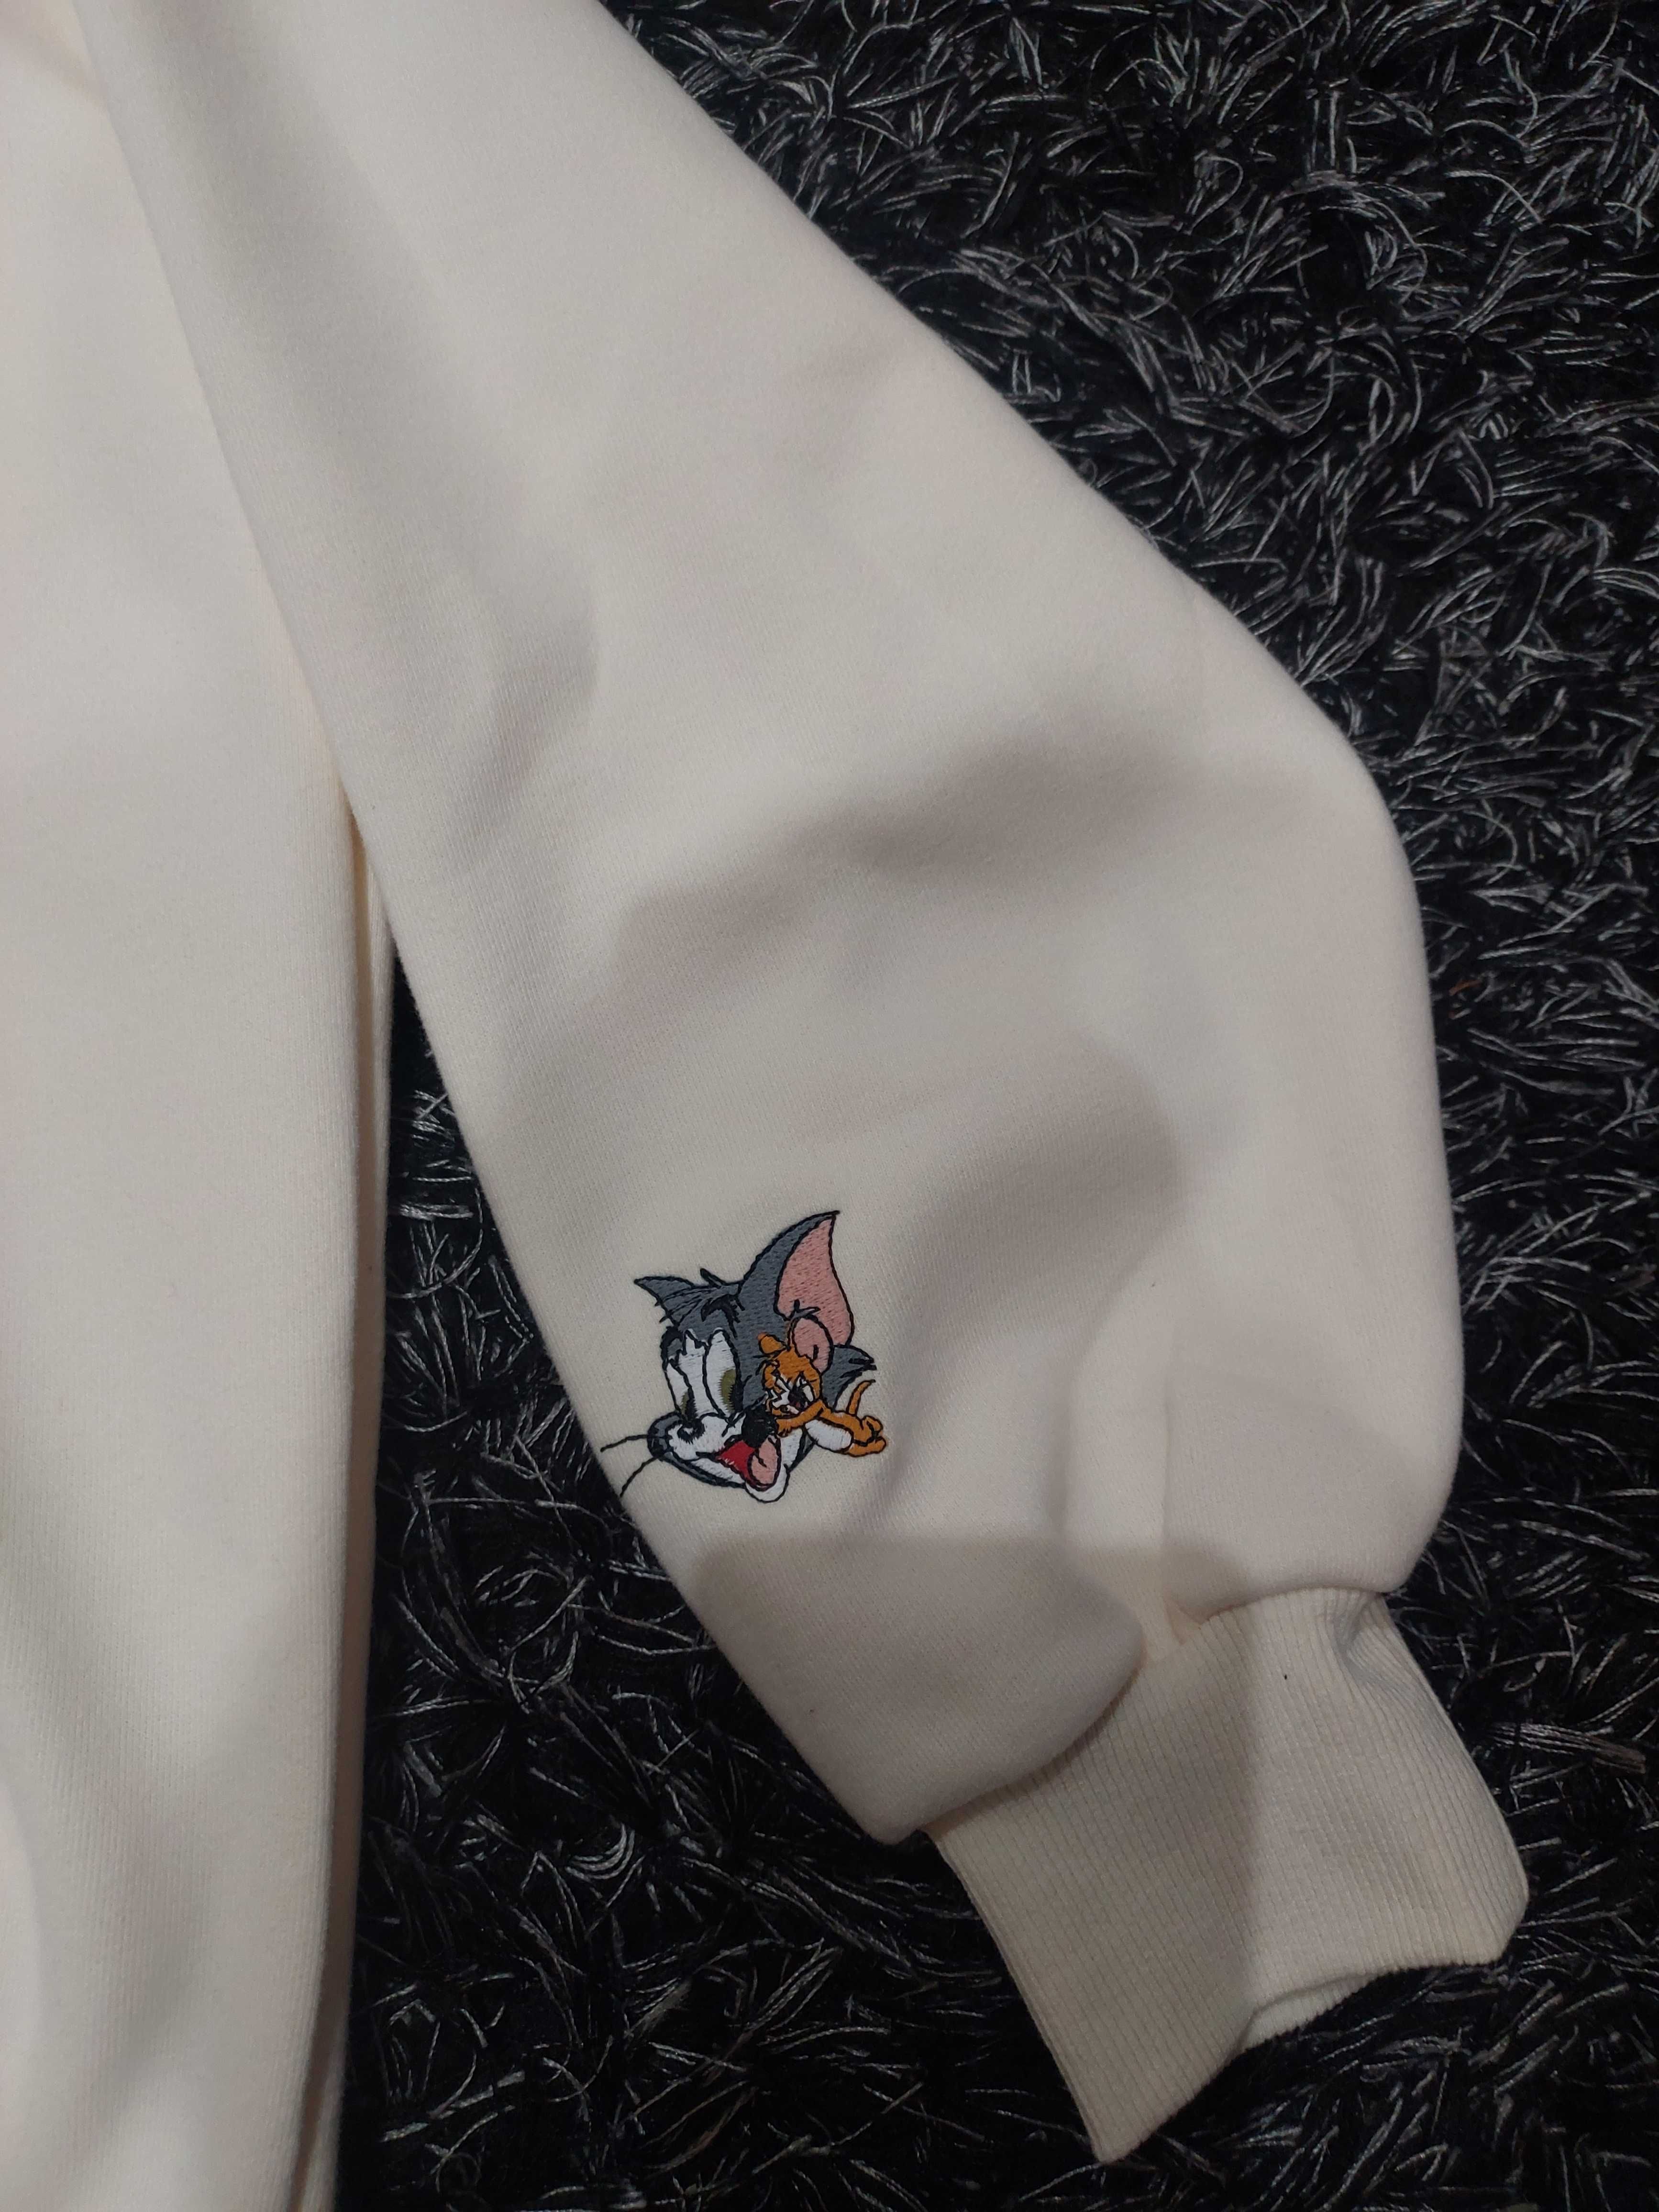 Noww bluza waniliowa Tom&Jerry